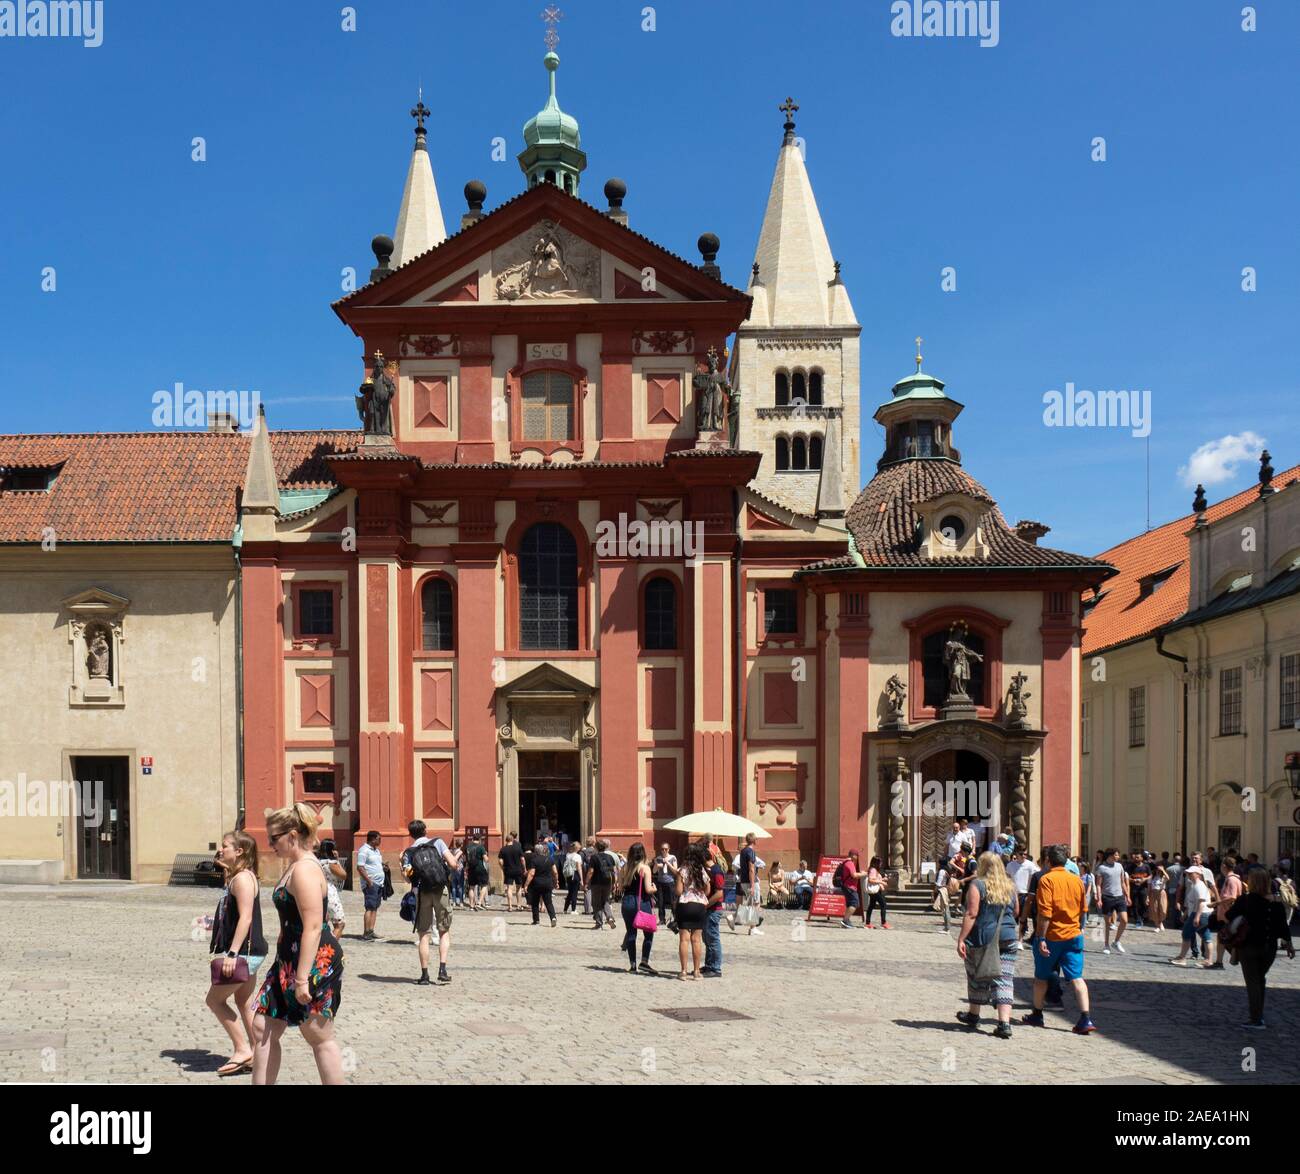 St. George's Basilica und Touristen in St. George's Square Prager Burg Komplex Prag Tschechische Republik. Stockfoto